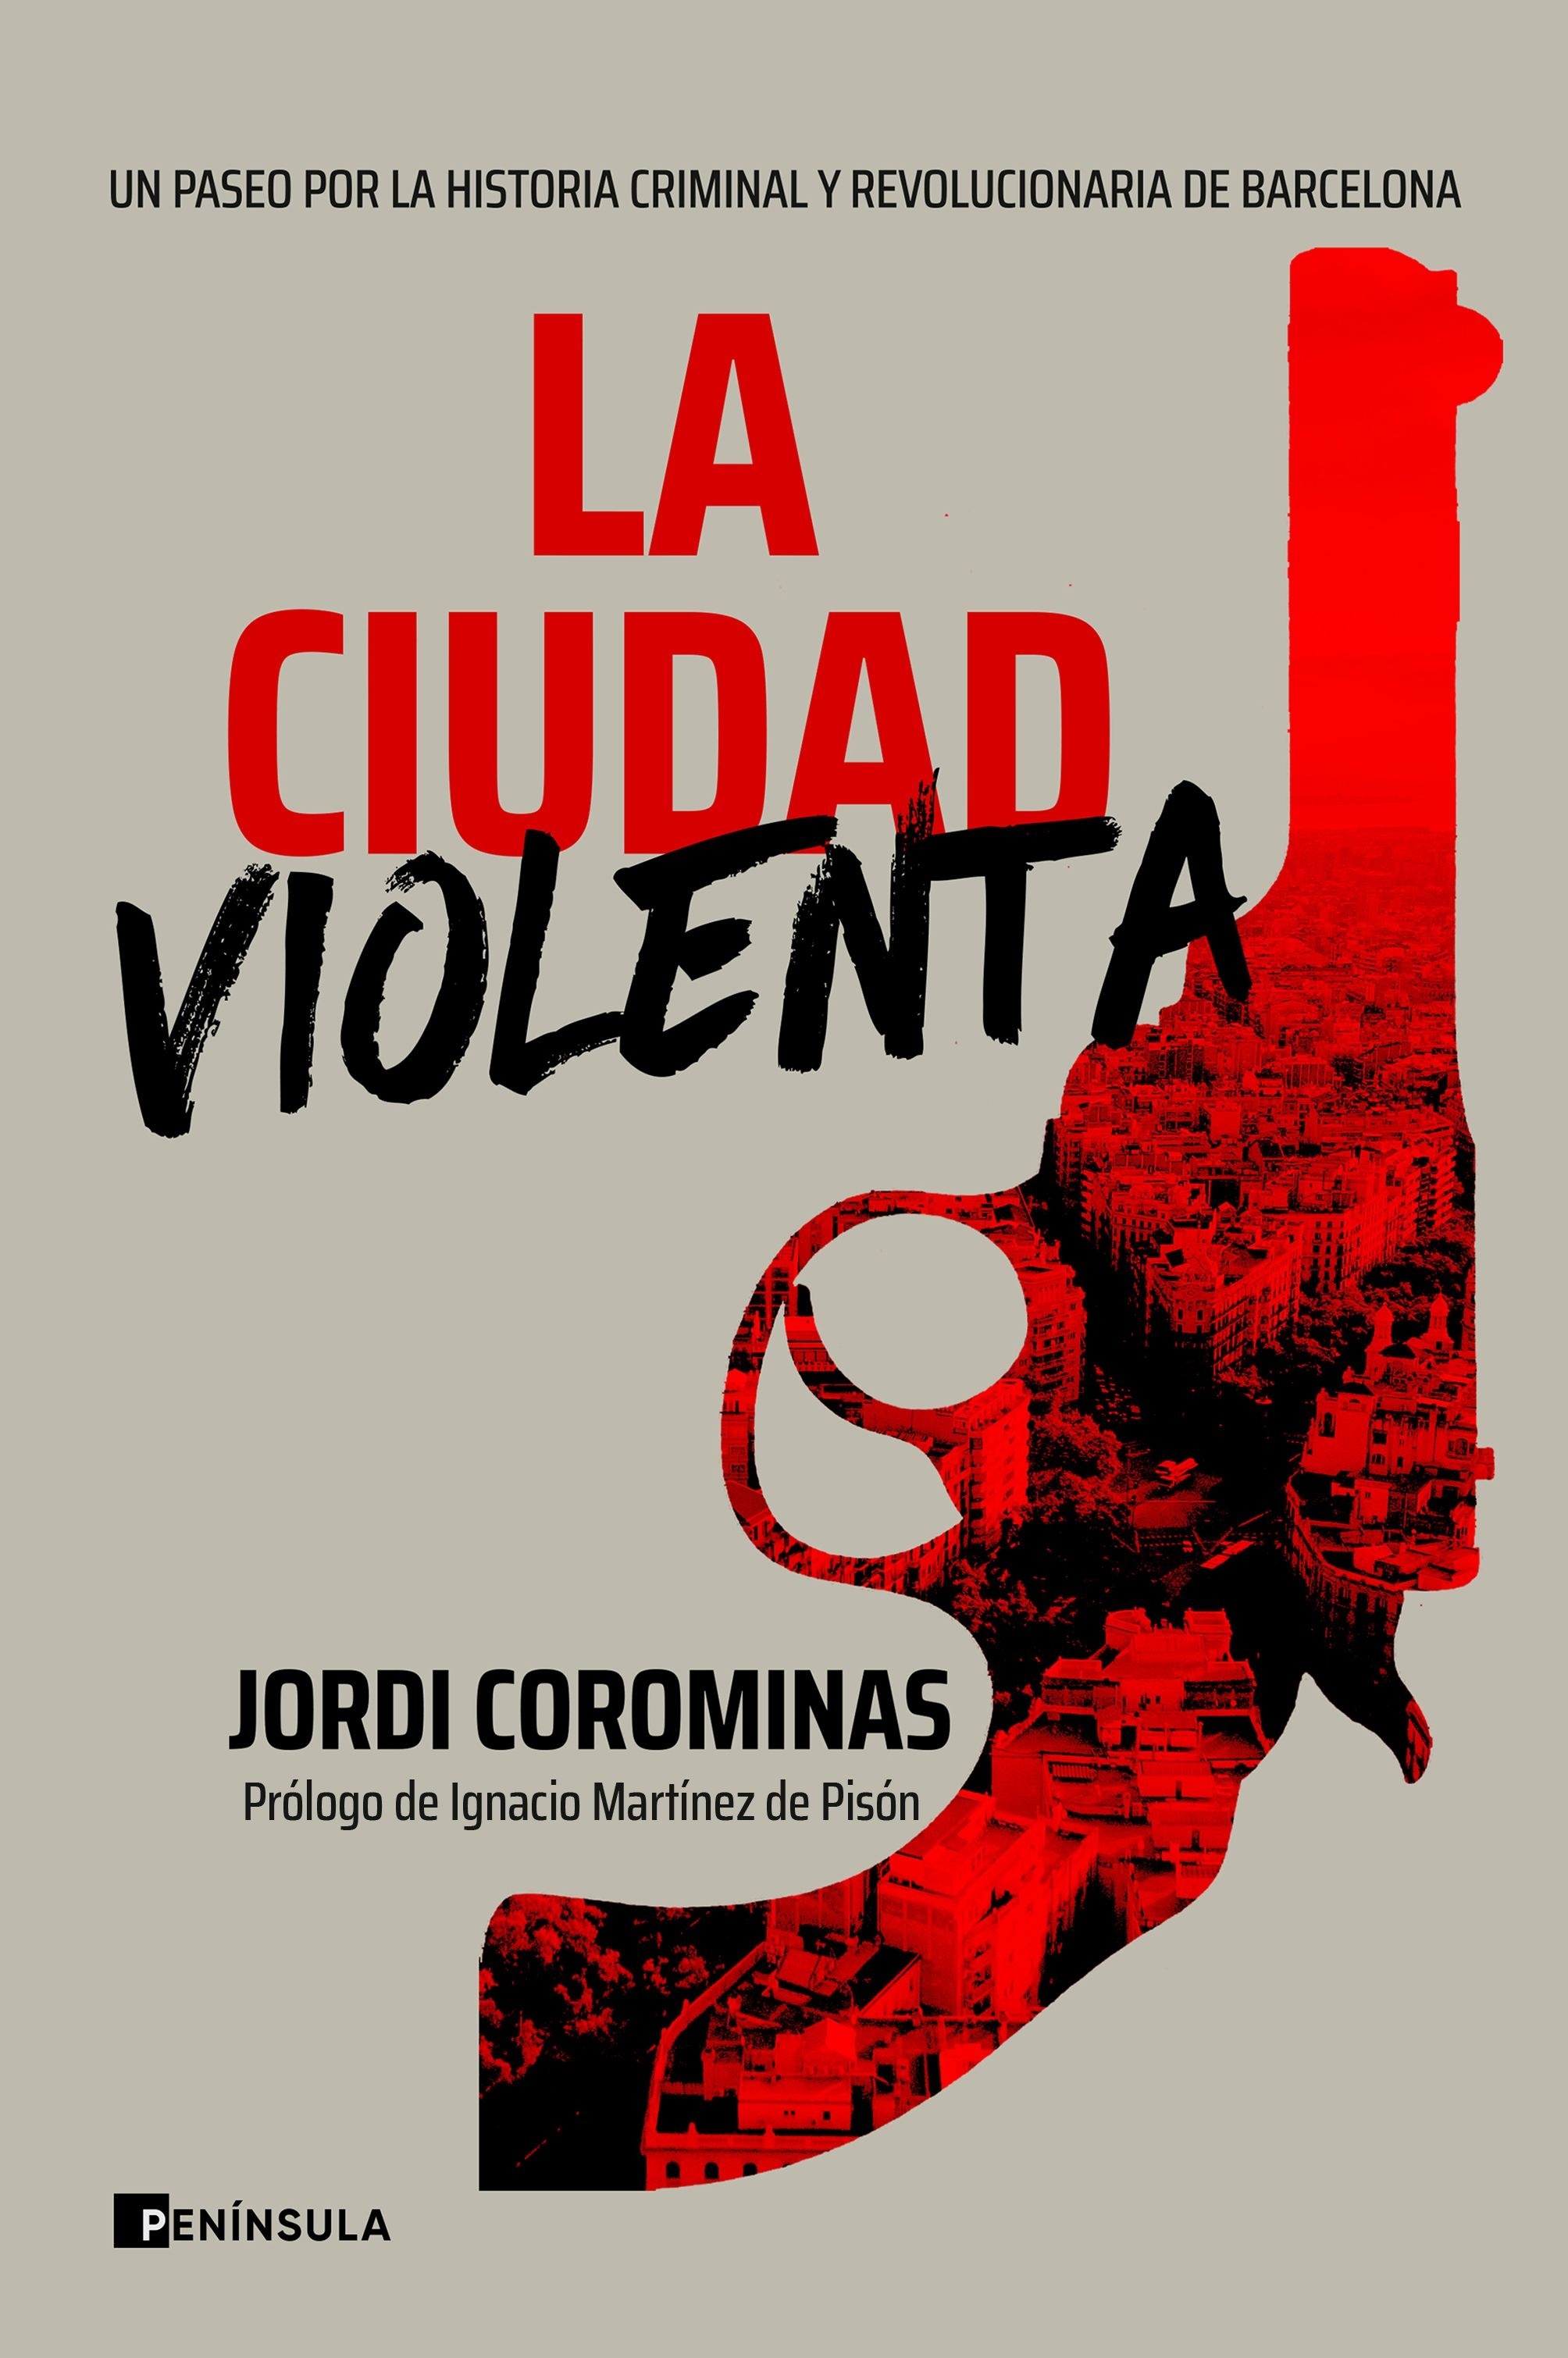 Ciudad violenta, La "Un paseo por la historia criminal y revolucionaria de Barcelona". 